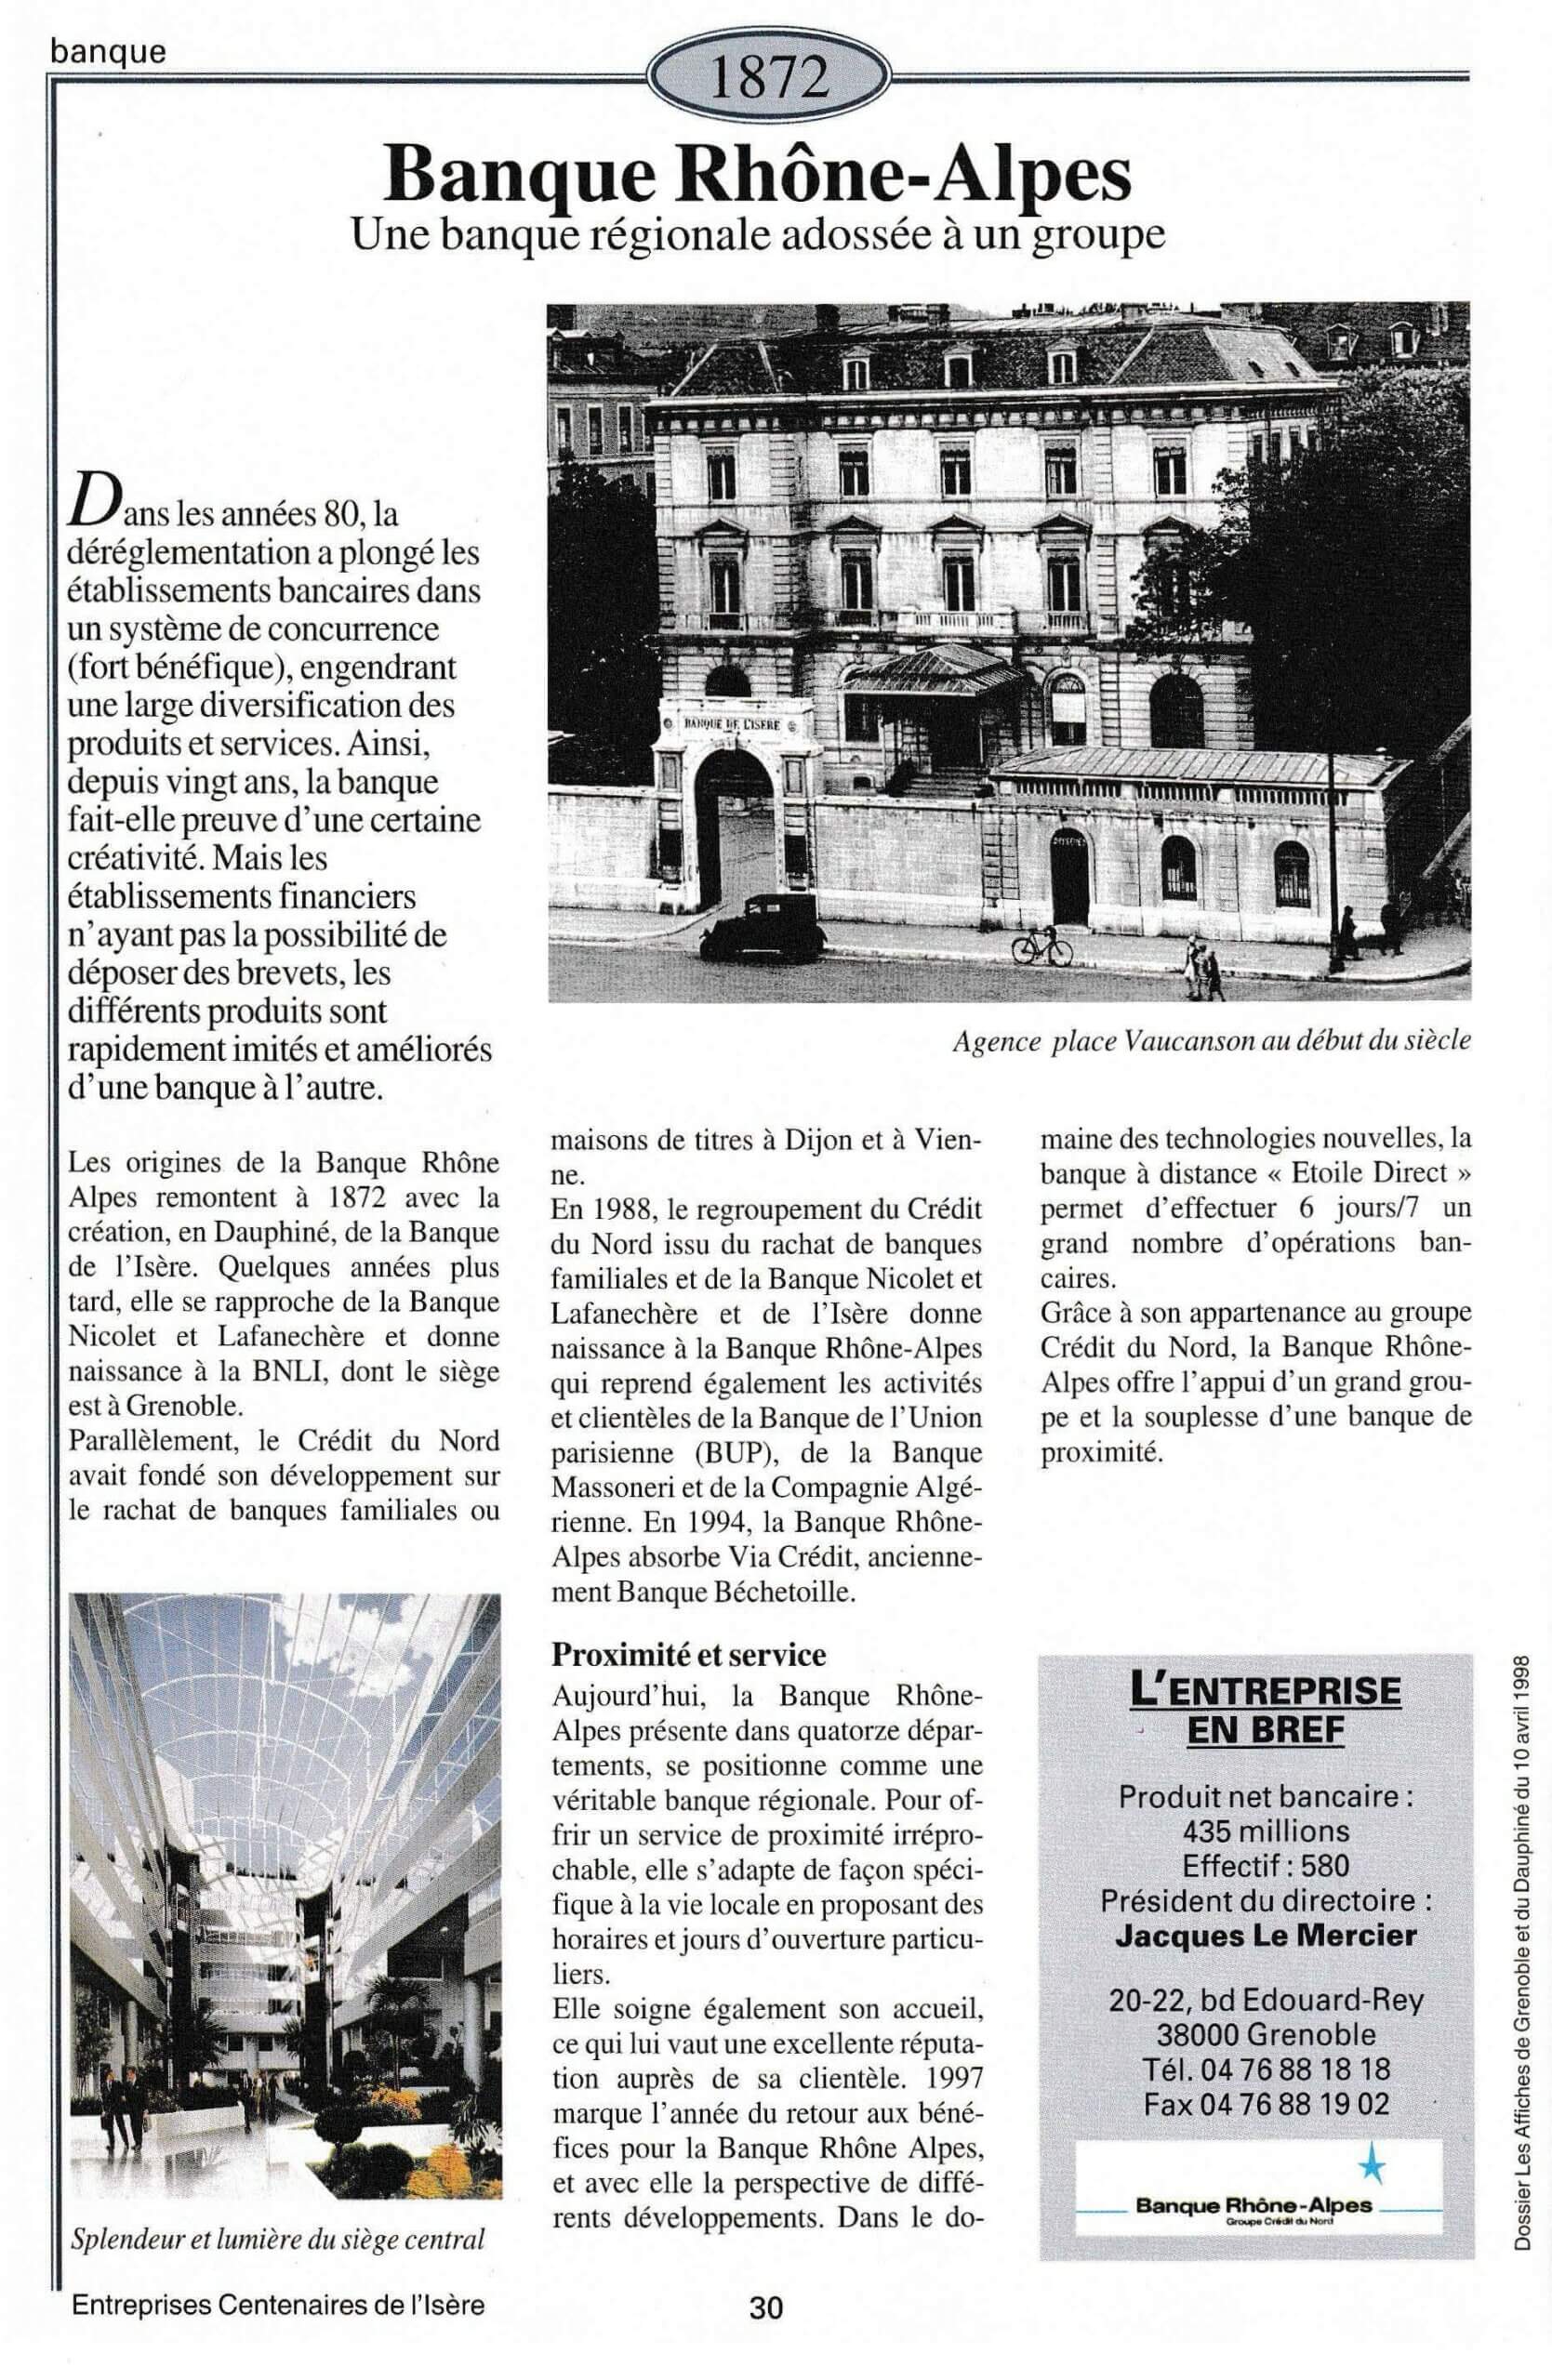 Banque Rhône Alpes - fiche du supplément "Entreprises centenaires en Isère", publié par Les affiches de Grenoble et du Dauphiné, juin 1998.